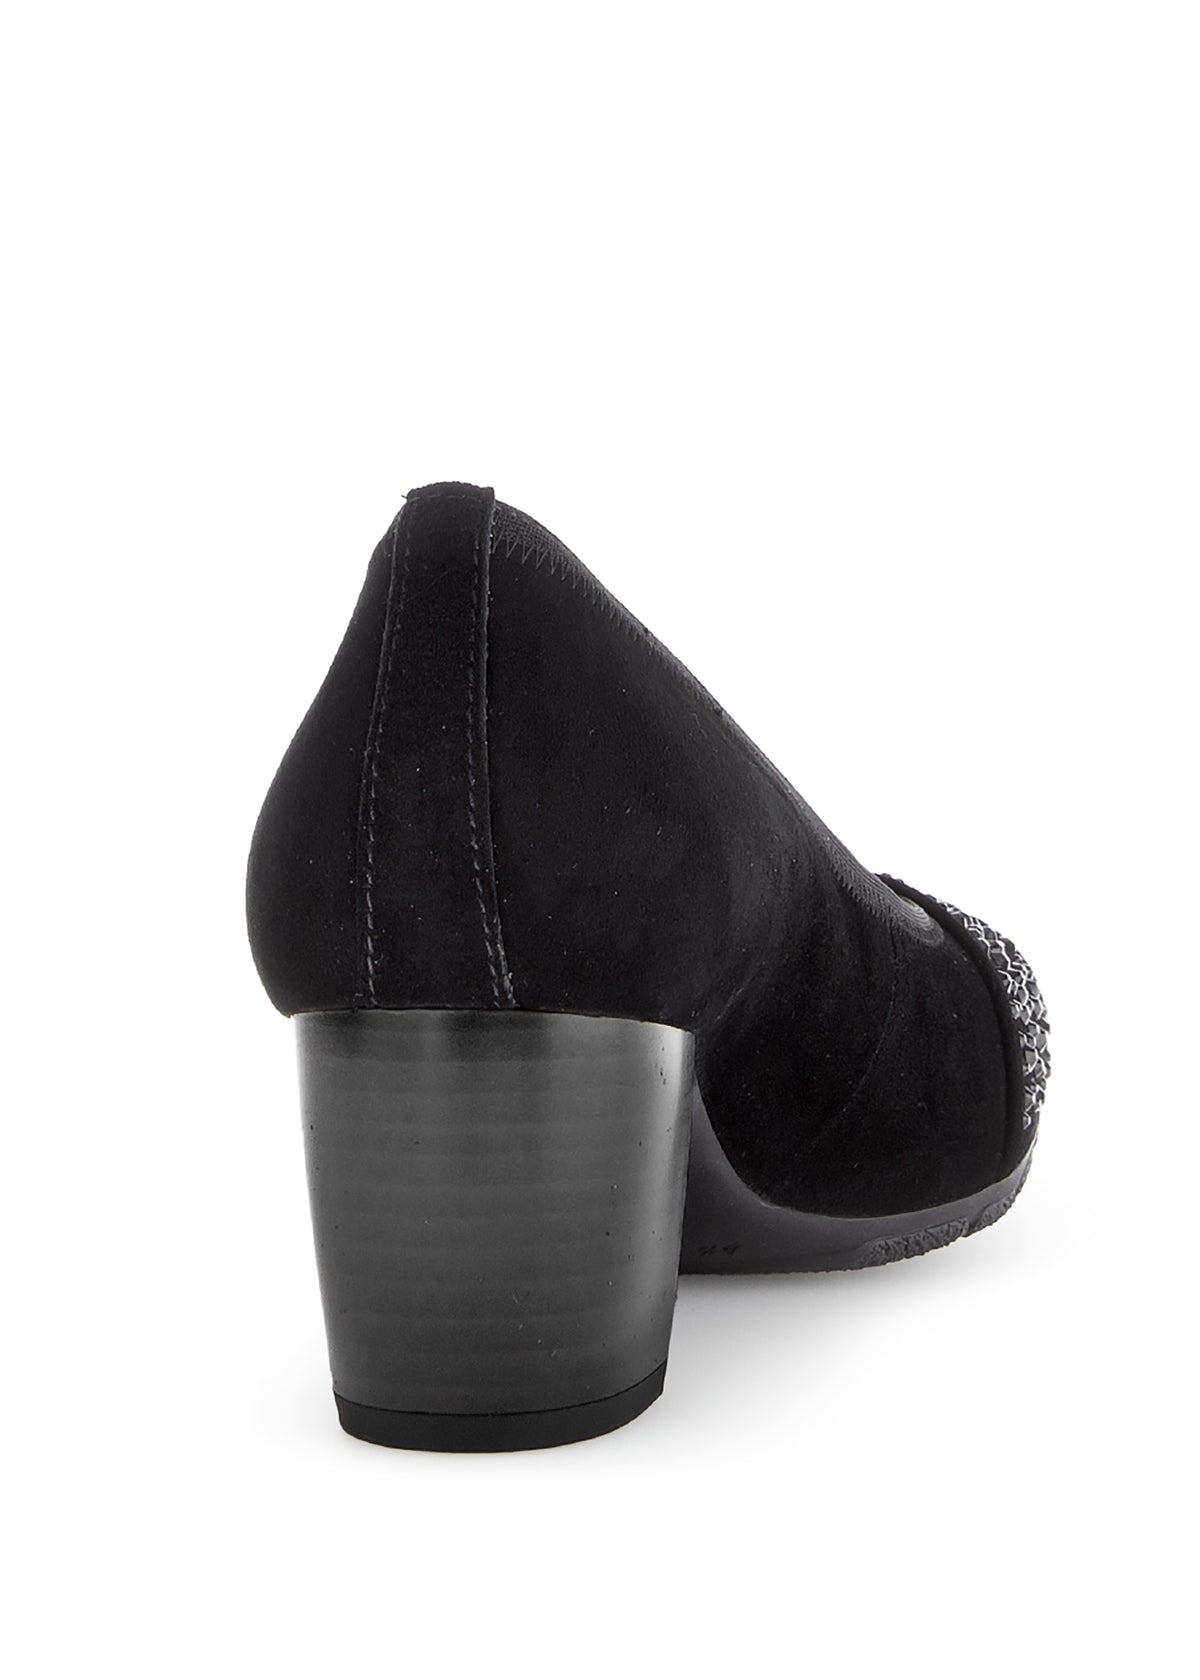 Skor med öppen tå med dubbklack - svart läder